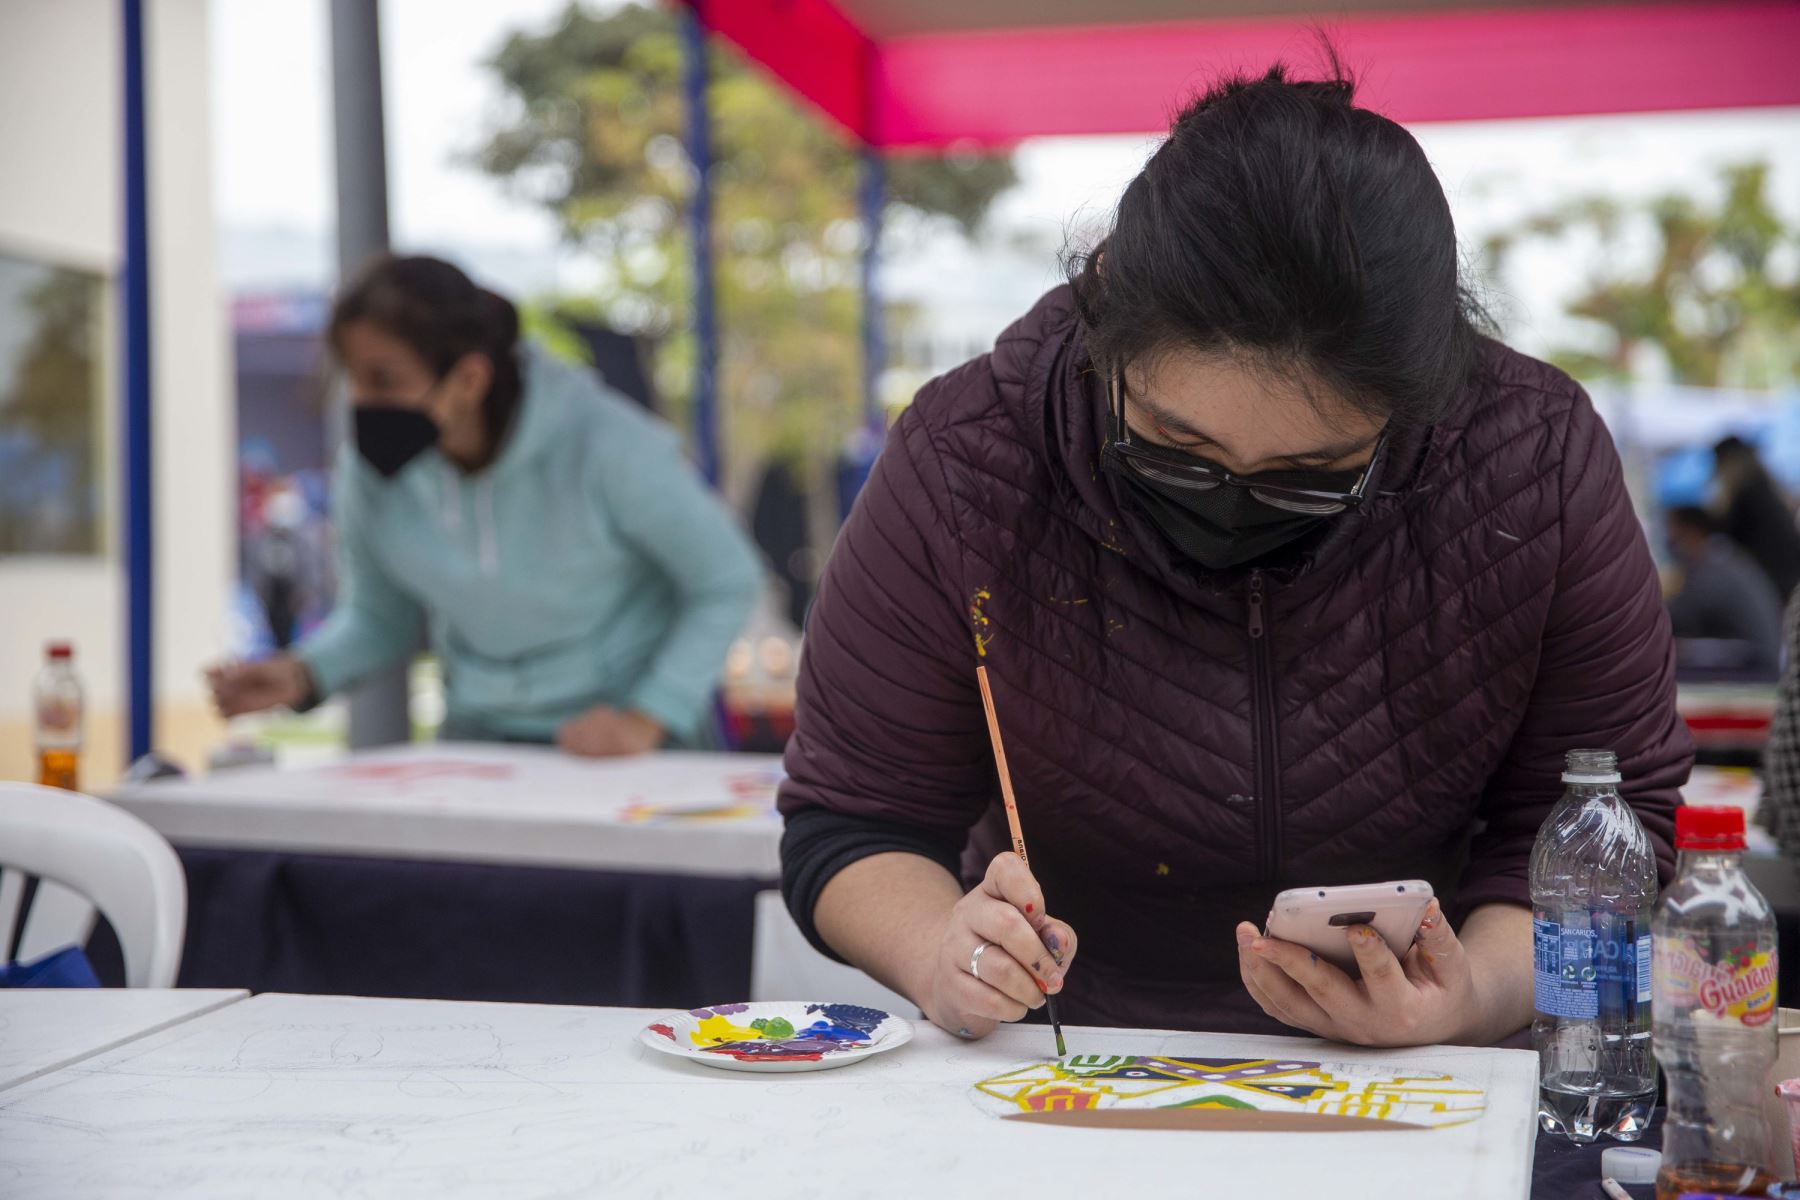 Inició la 4ta Feria del Libro Bellavista 2022 donde el público pudo apreciar los libros más sonados en la literatura actual de Perú y Colombia. Foto: ANDINA/Carla Patiño